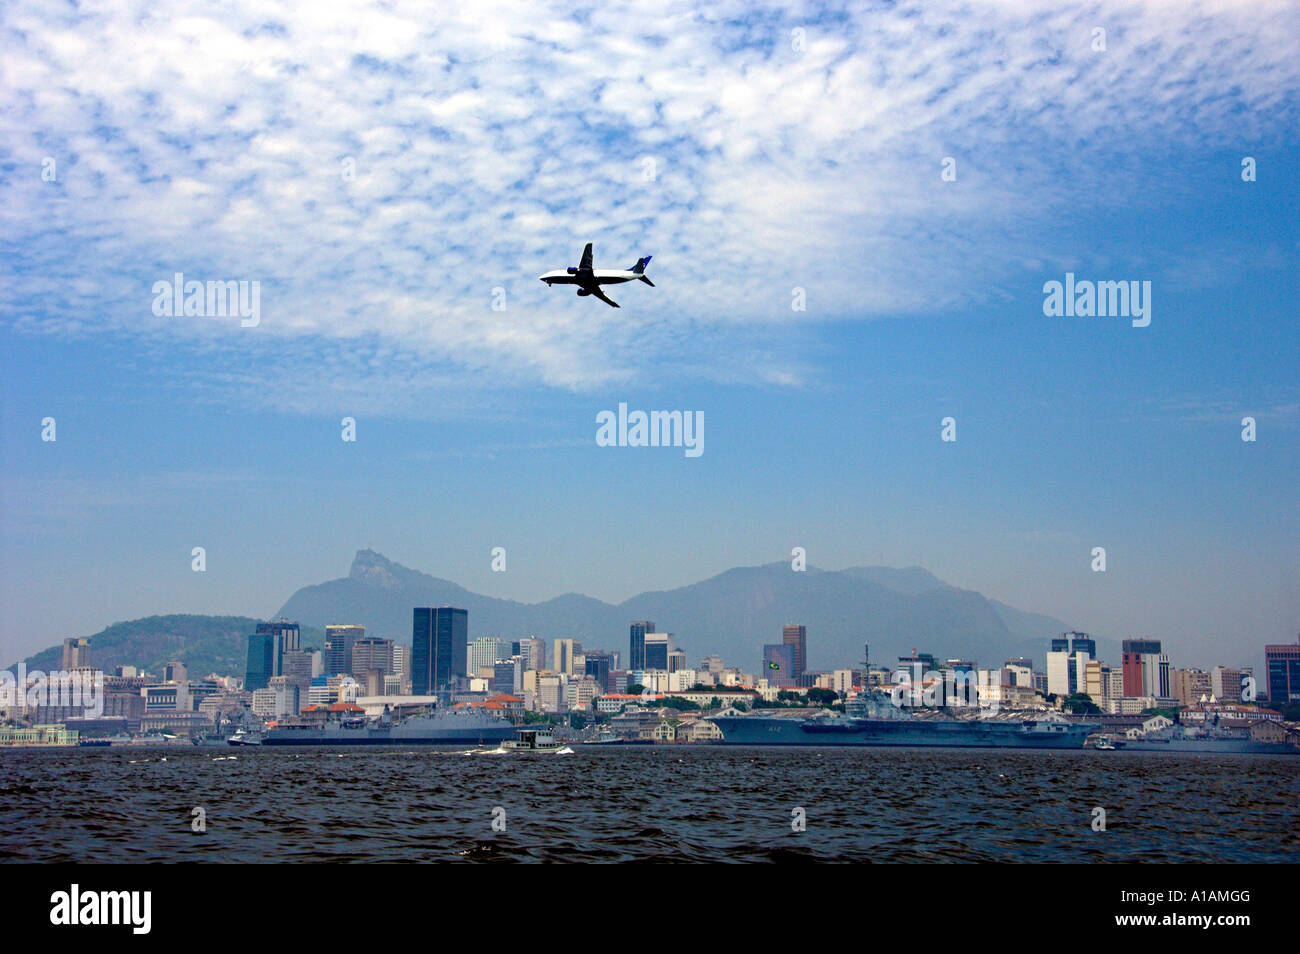 A commercial passenger plane landing at Rio De Janeiro, Brazil Stock Photo